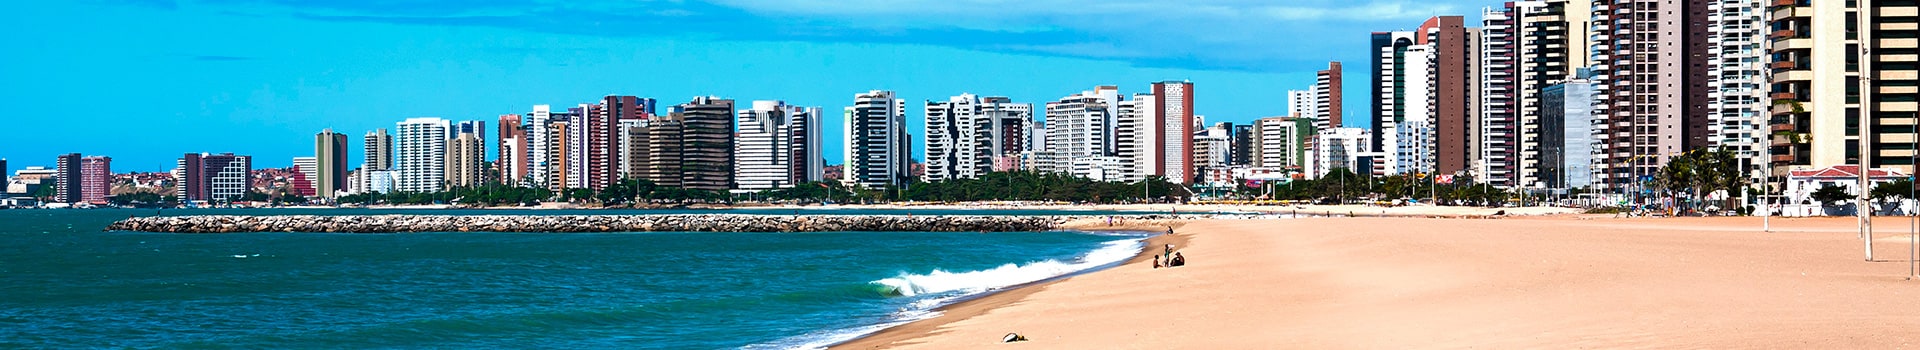 Rio de janeiro - Fortaleza